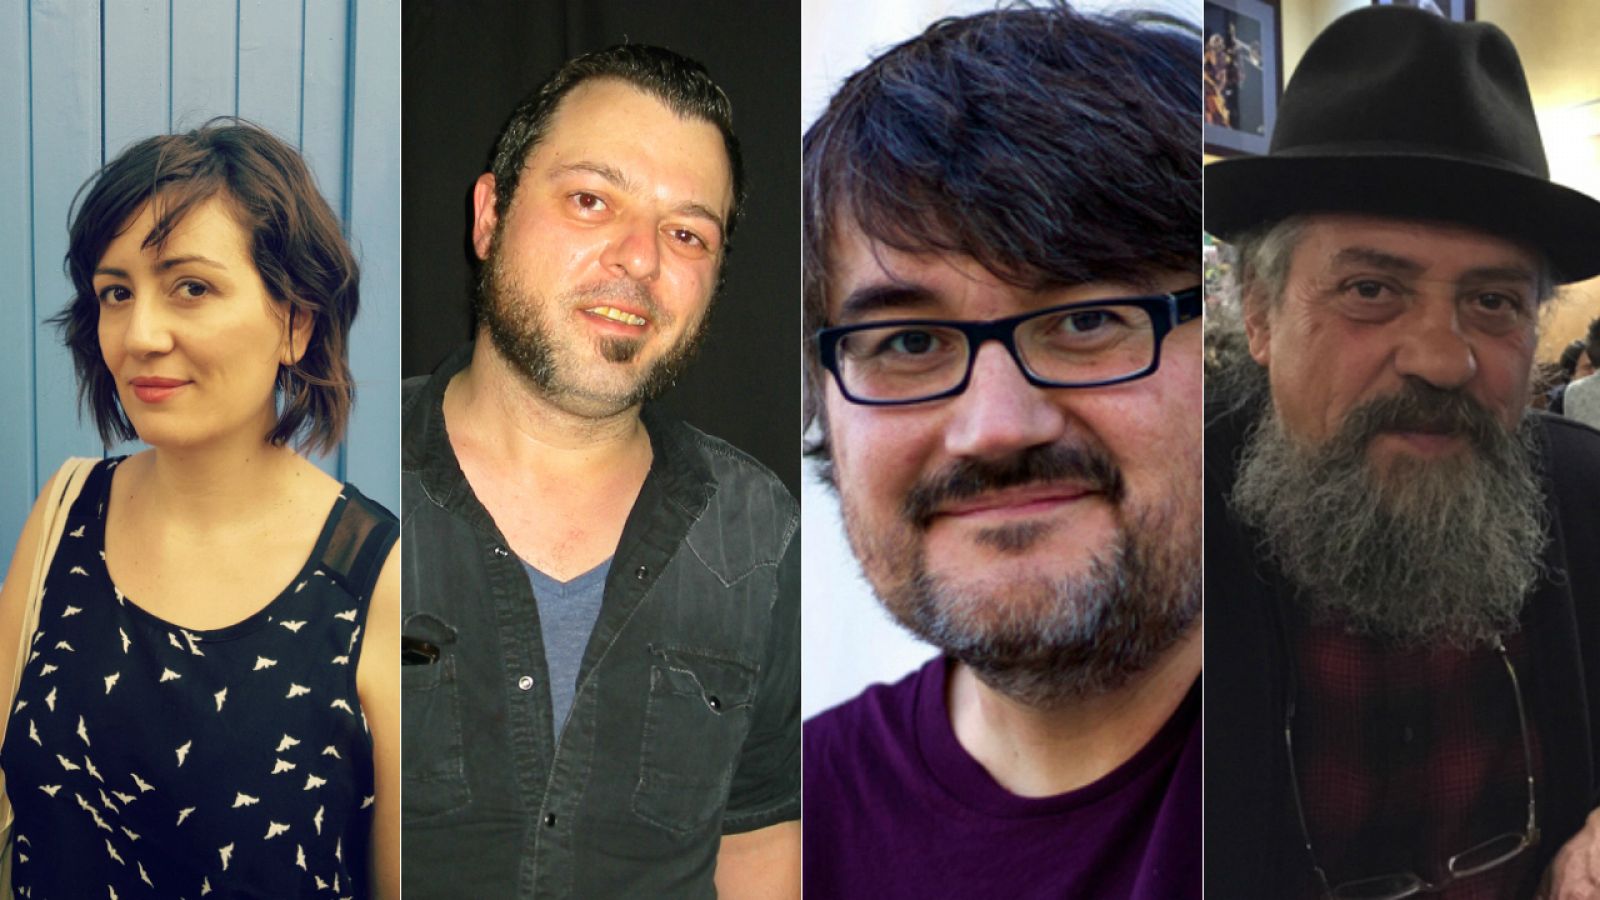 Ana Galvañ, David Rubín, Santiago García y Francesc Capdevilla 'Max', conversarán sobre cómics en Cultura16